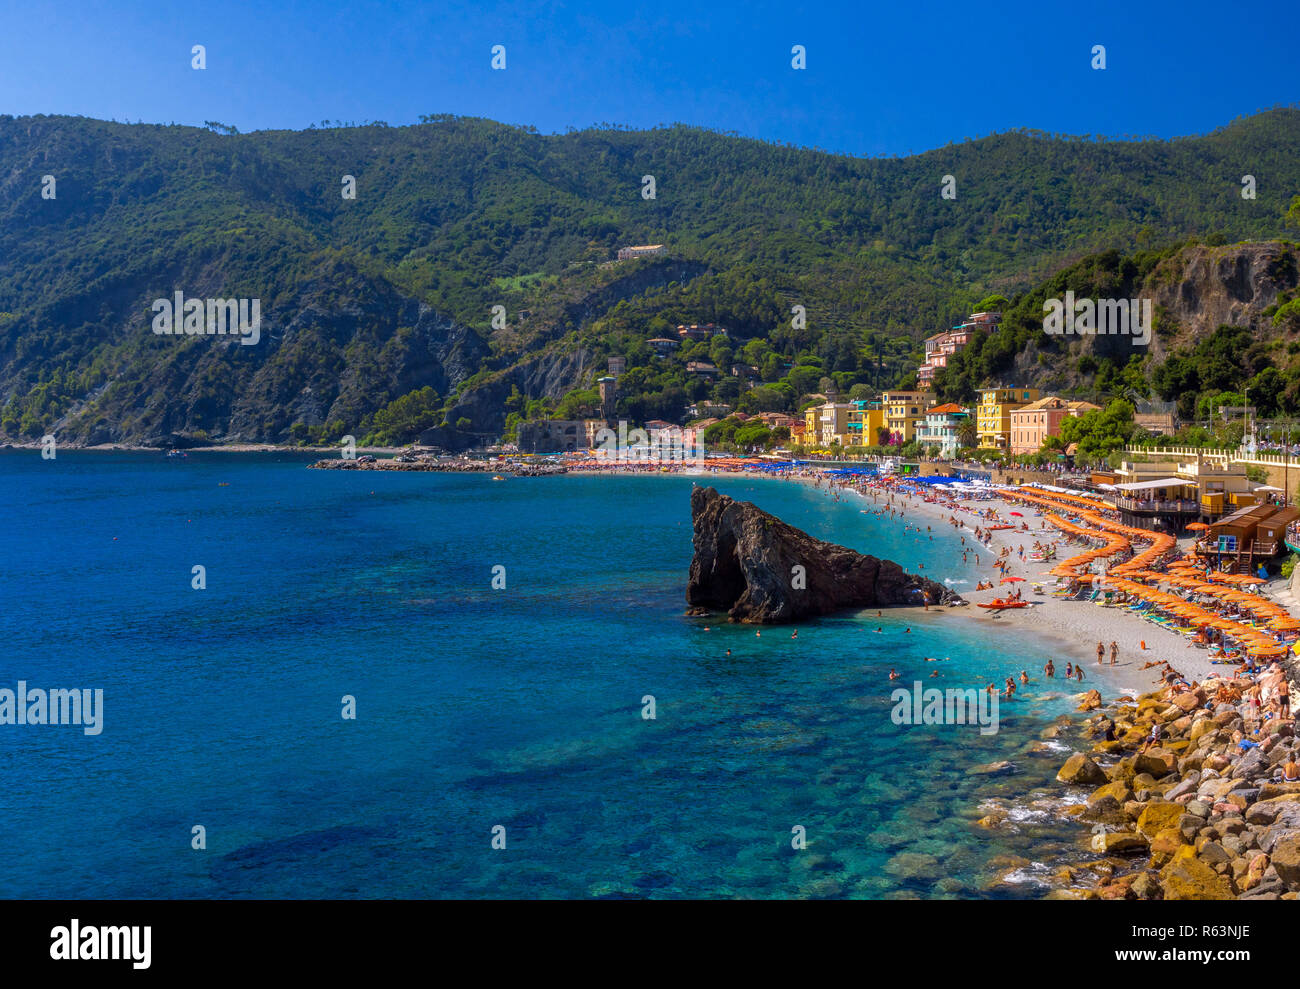 Beach of Monterosso al Mare, Cinque Terre, Rivera di Levante, Province of La Spazia, Liguria, Italy, Europe Stock Photo